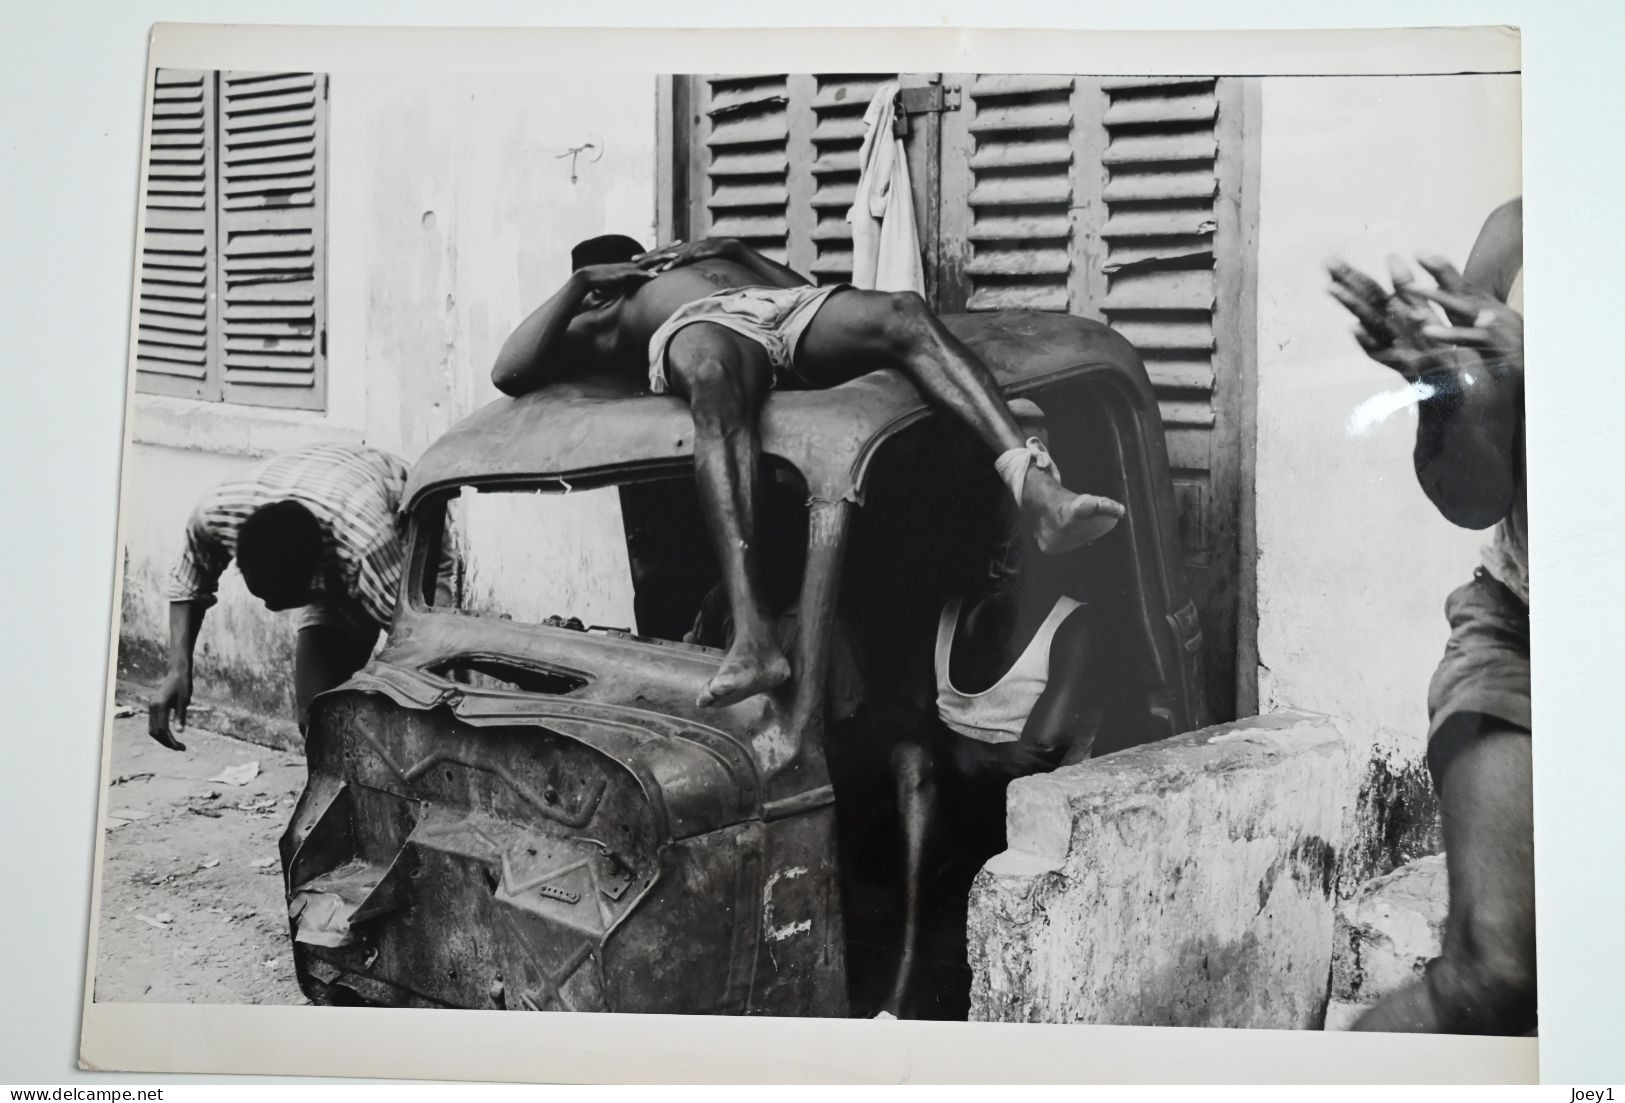 Portfolio original de Pierre Duverger pendant son voyage en Afrique en 1957 en 2CV, Format 30/40 40 photos